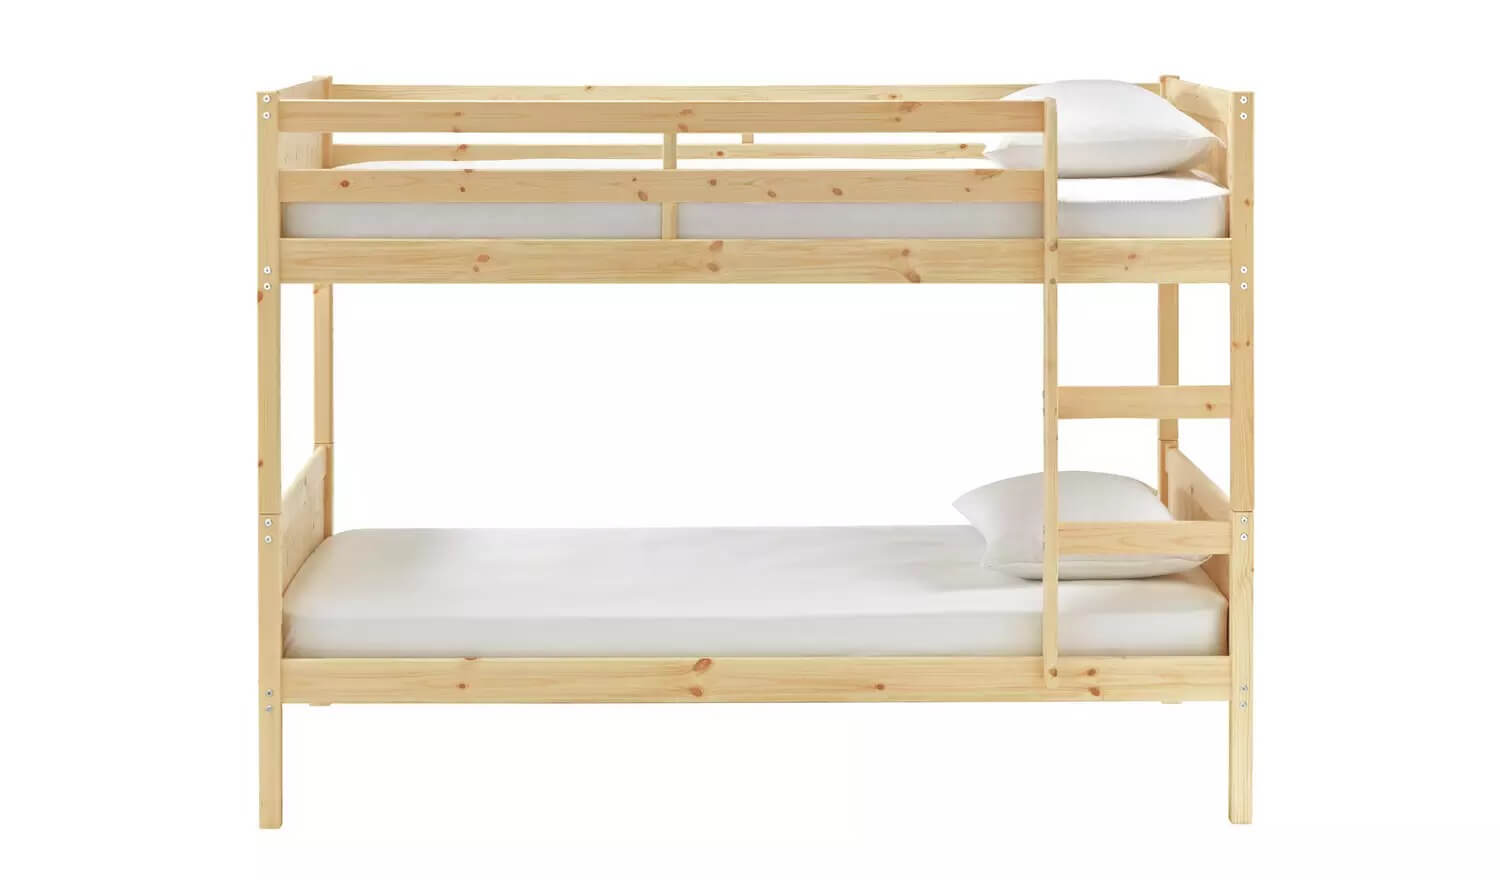 Mẫu giường tầng cho bé giá rẻ bằng gỗ đơn giản